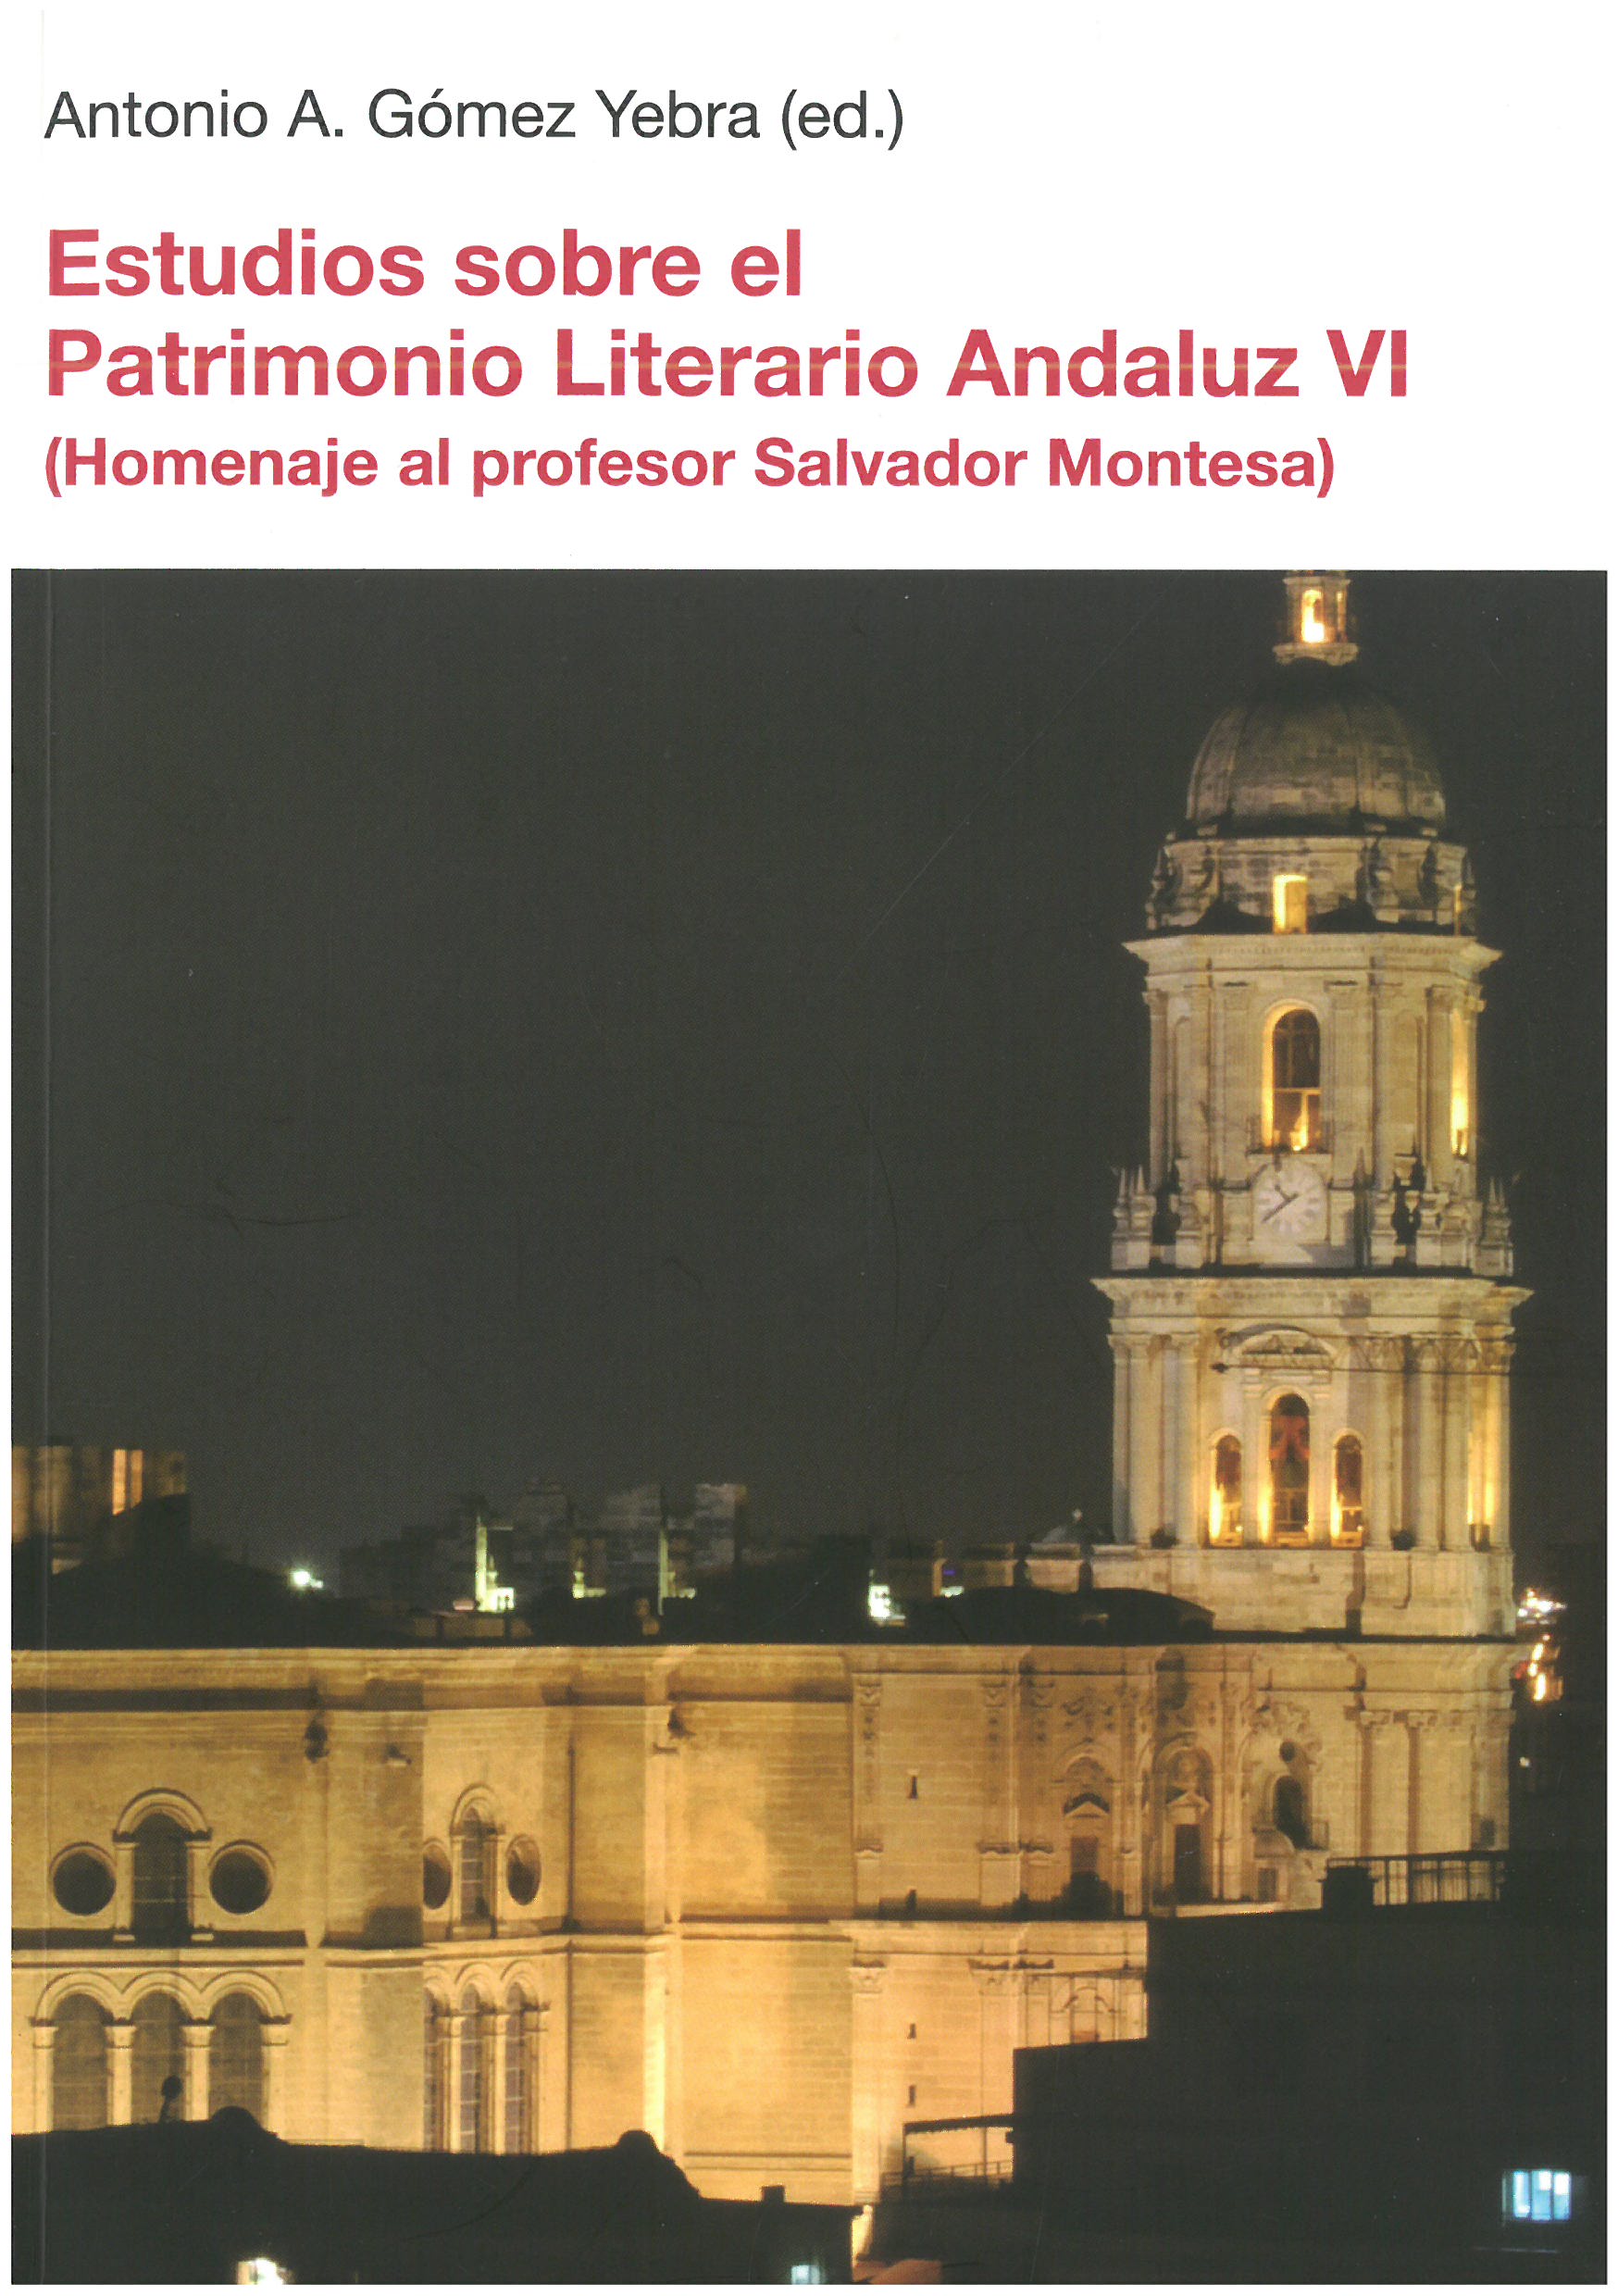 Imagen de portada del libro Estudios sobre el patrimonio literario andaluz (VI)